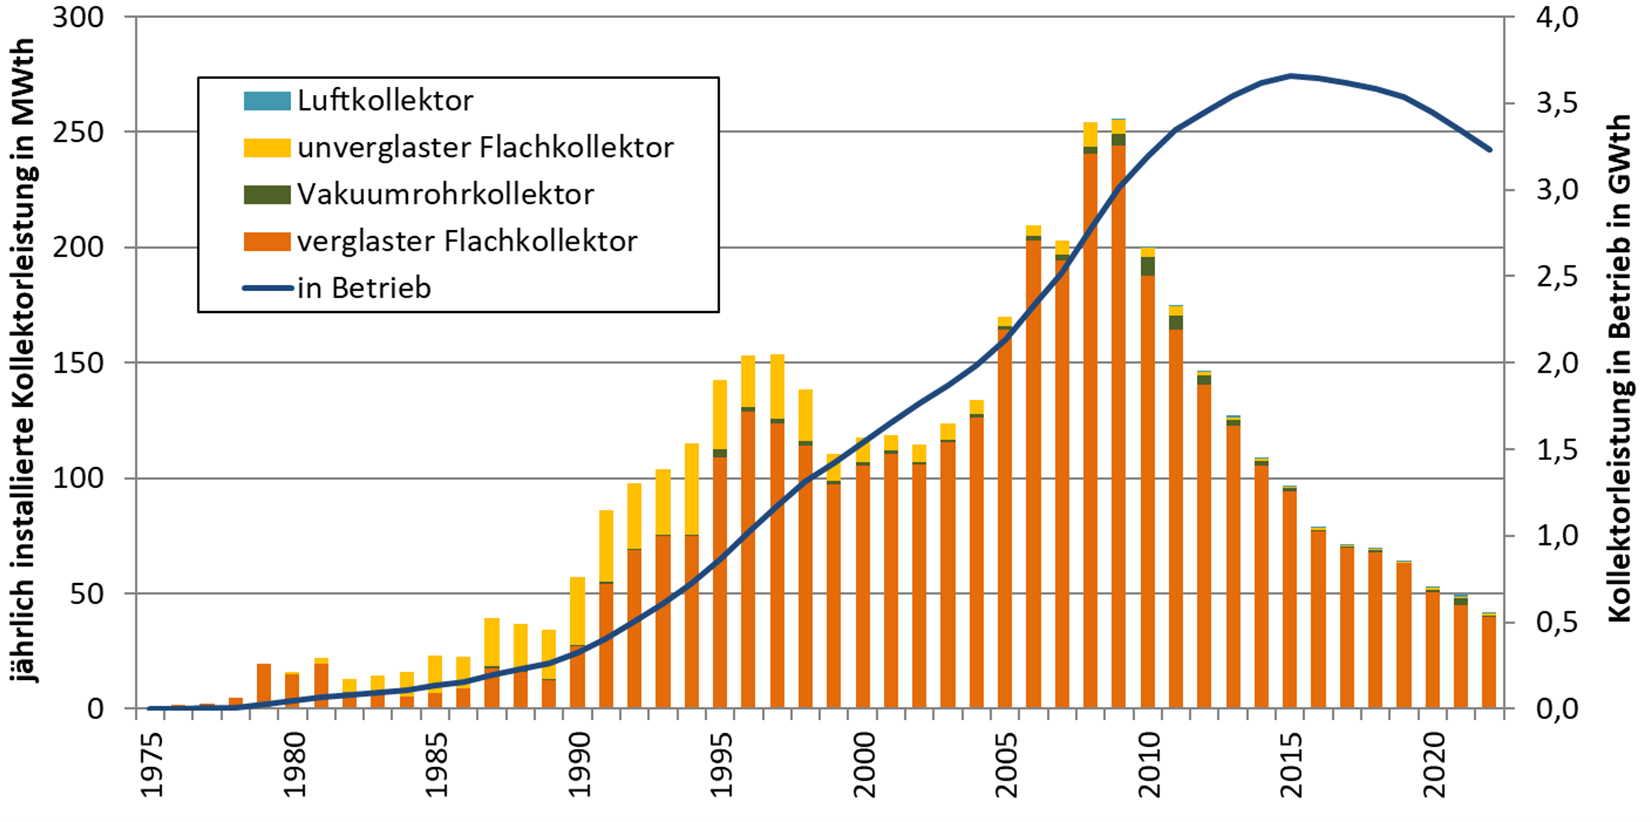 Marktentwicklung der Solarthermie in Österreich bis 2022